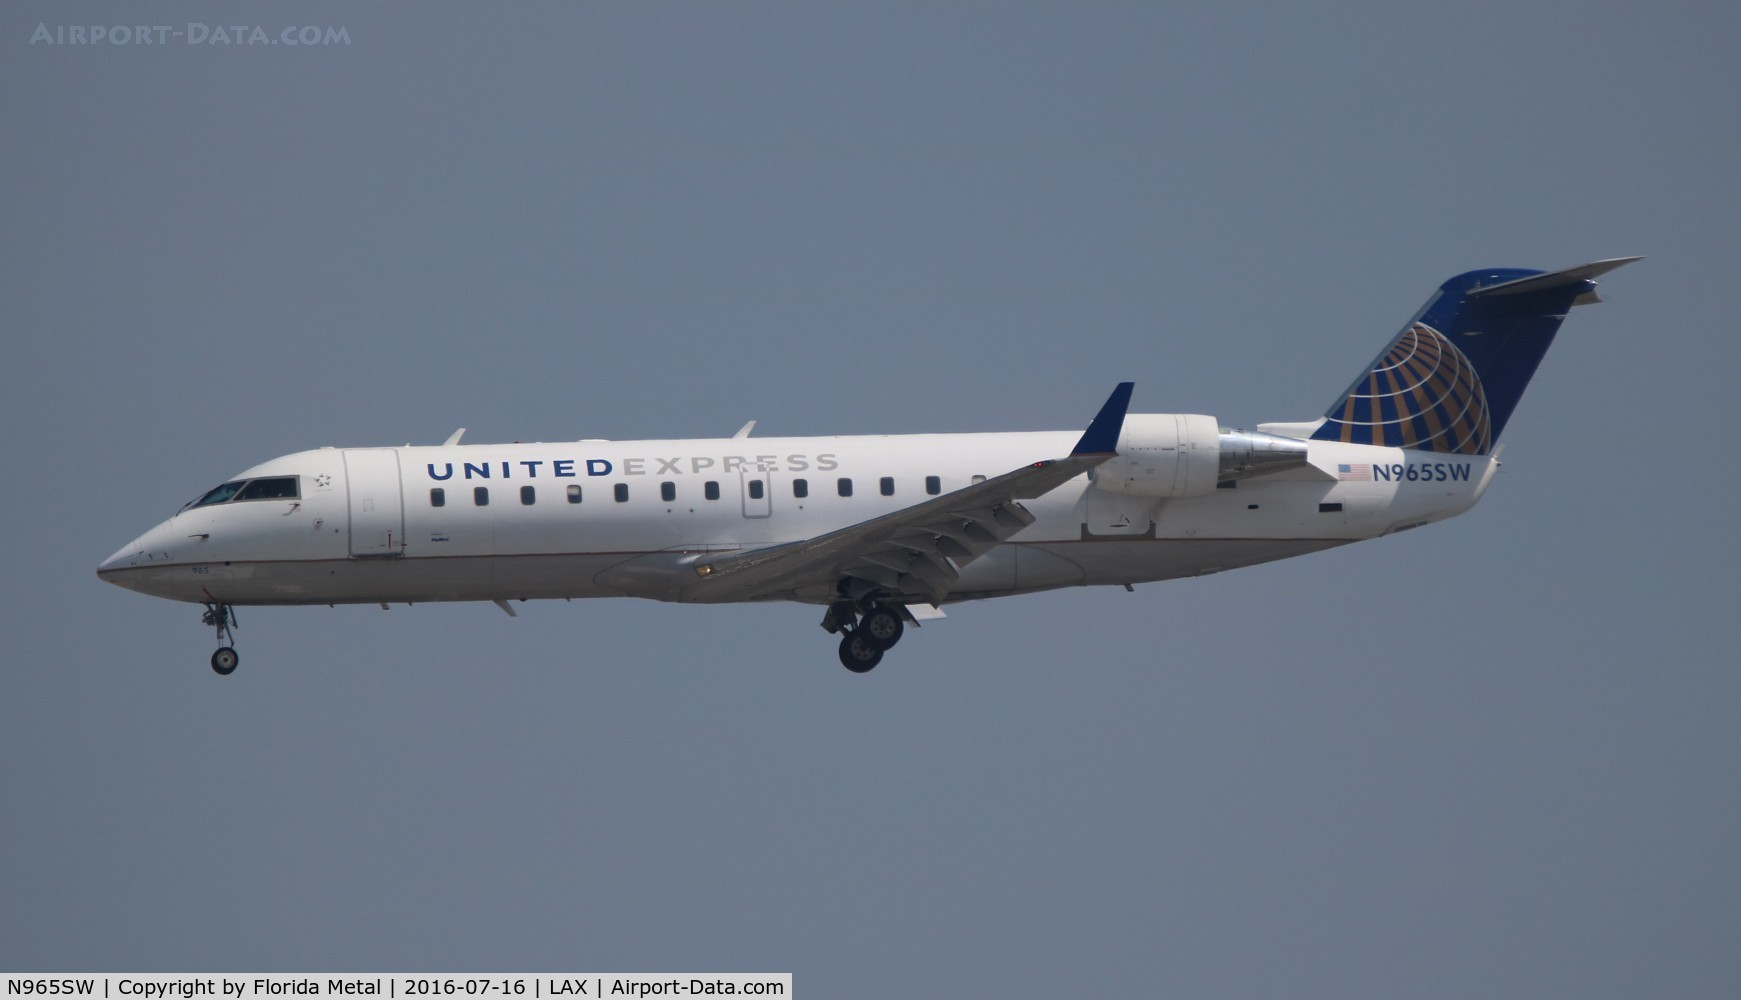 N965SW, 2003 Bombardier CRJ-200ER (CL-600-2B19) C/N 7871, United Express